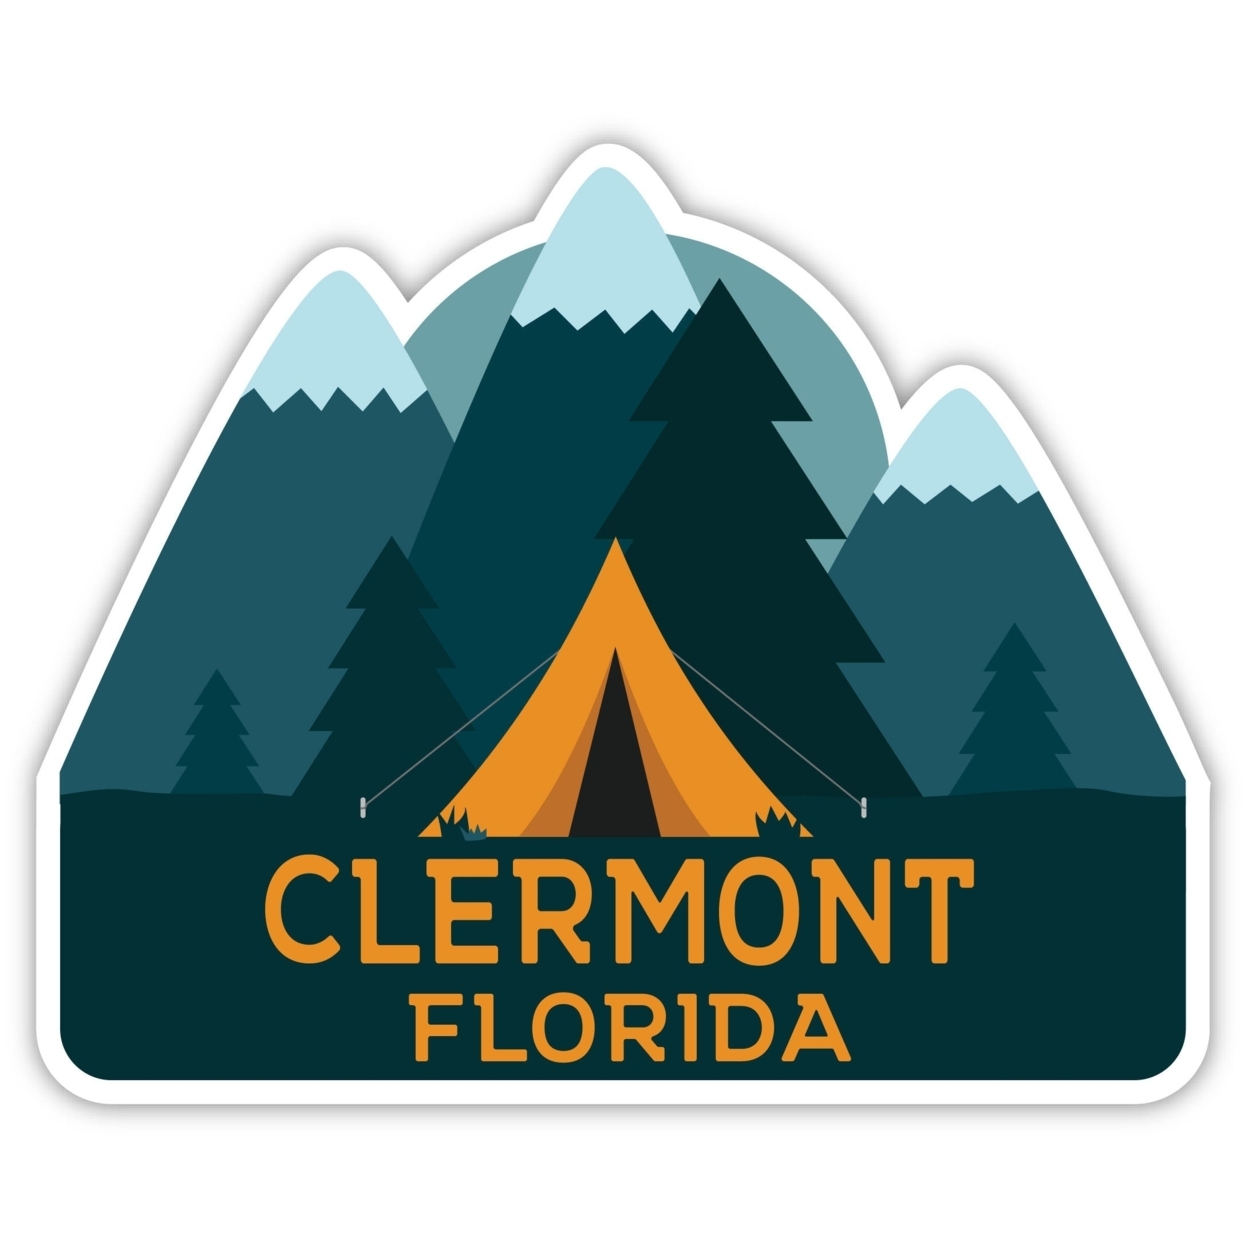 Clermont Florida Souvenir Decorative Stickers (Choose Theme And Size) - Single Unit, 12-Inch, Tent